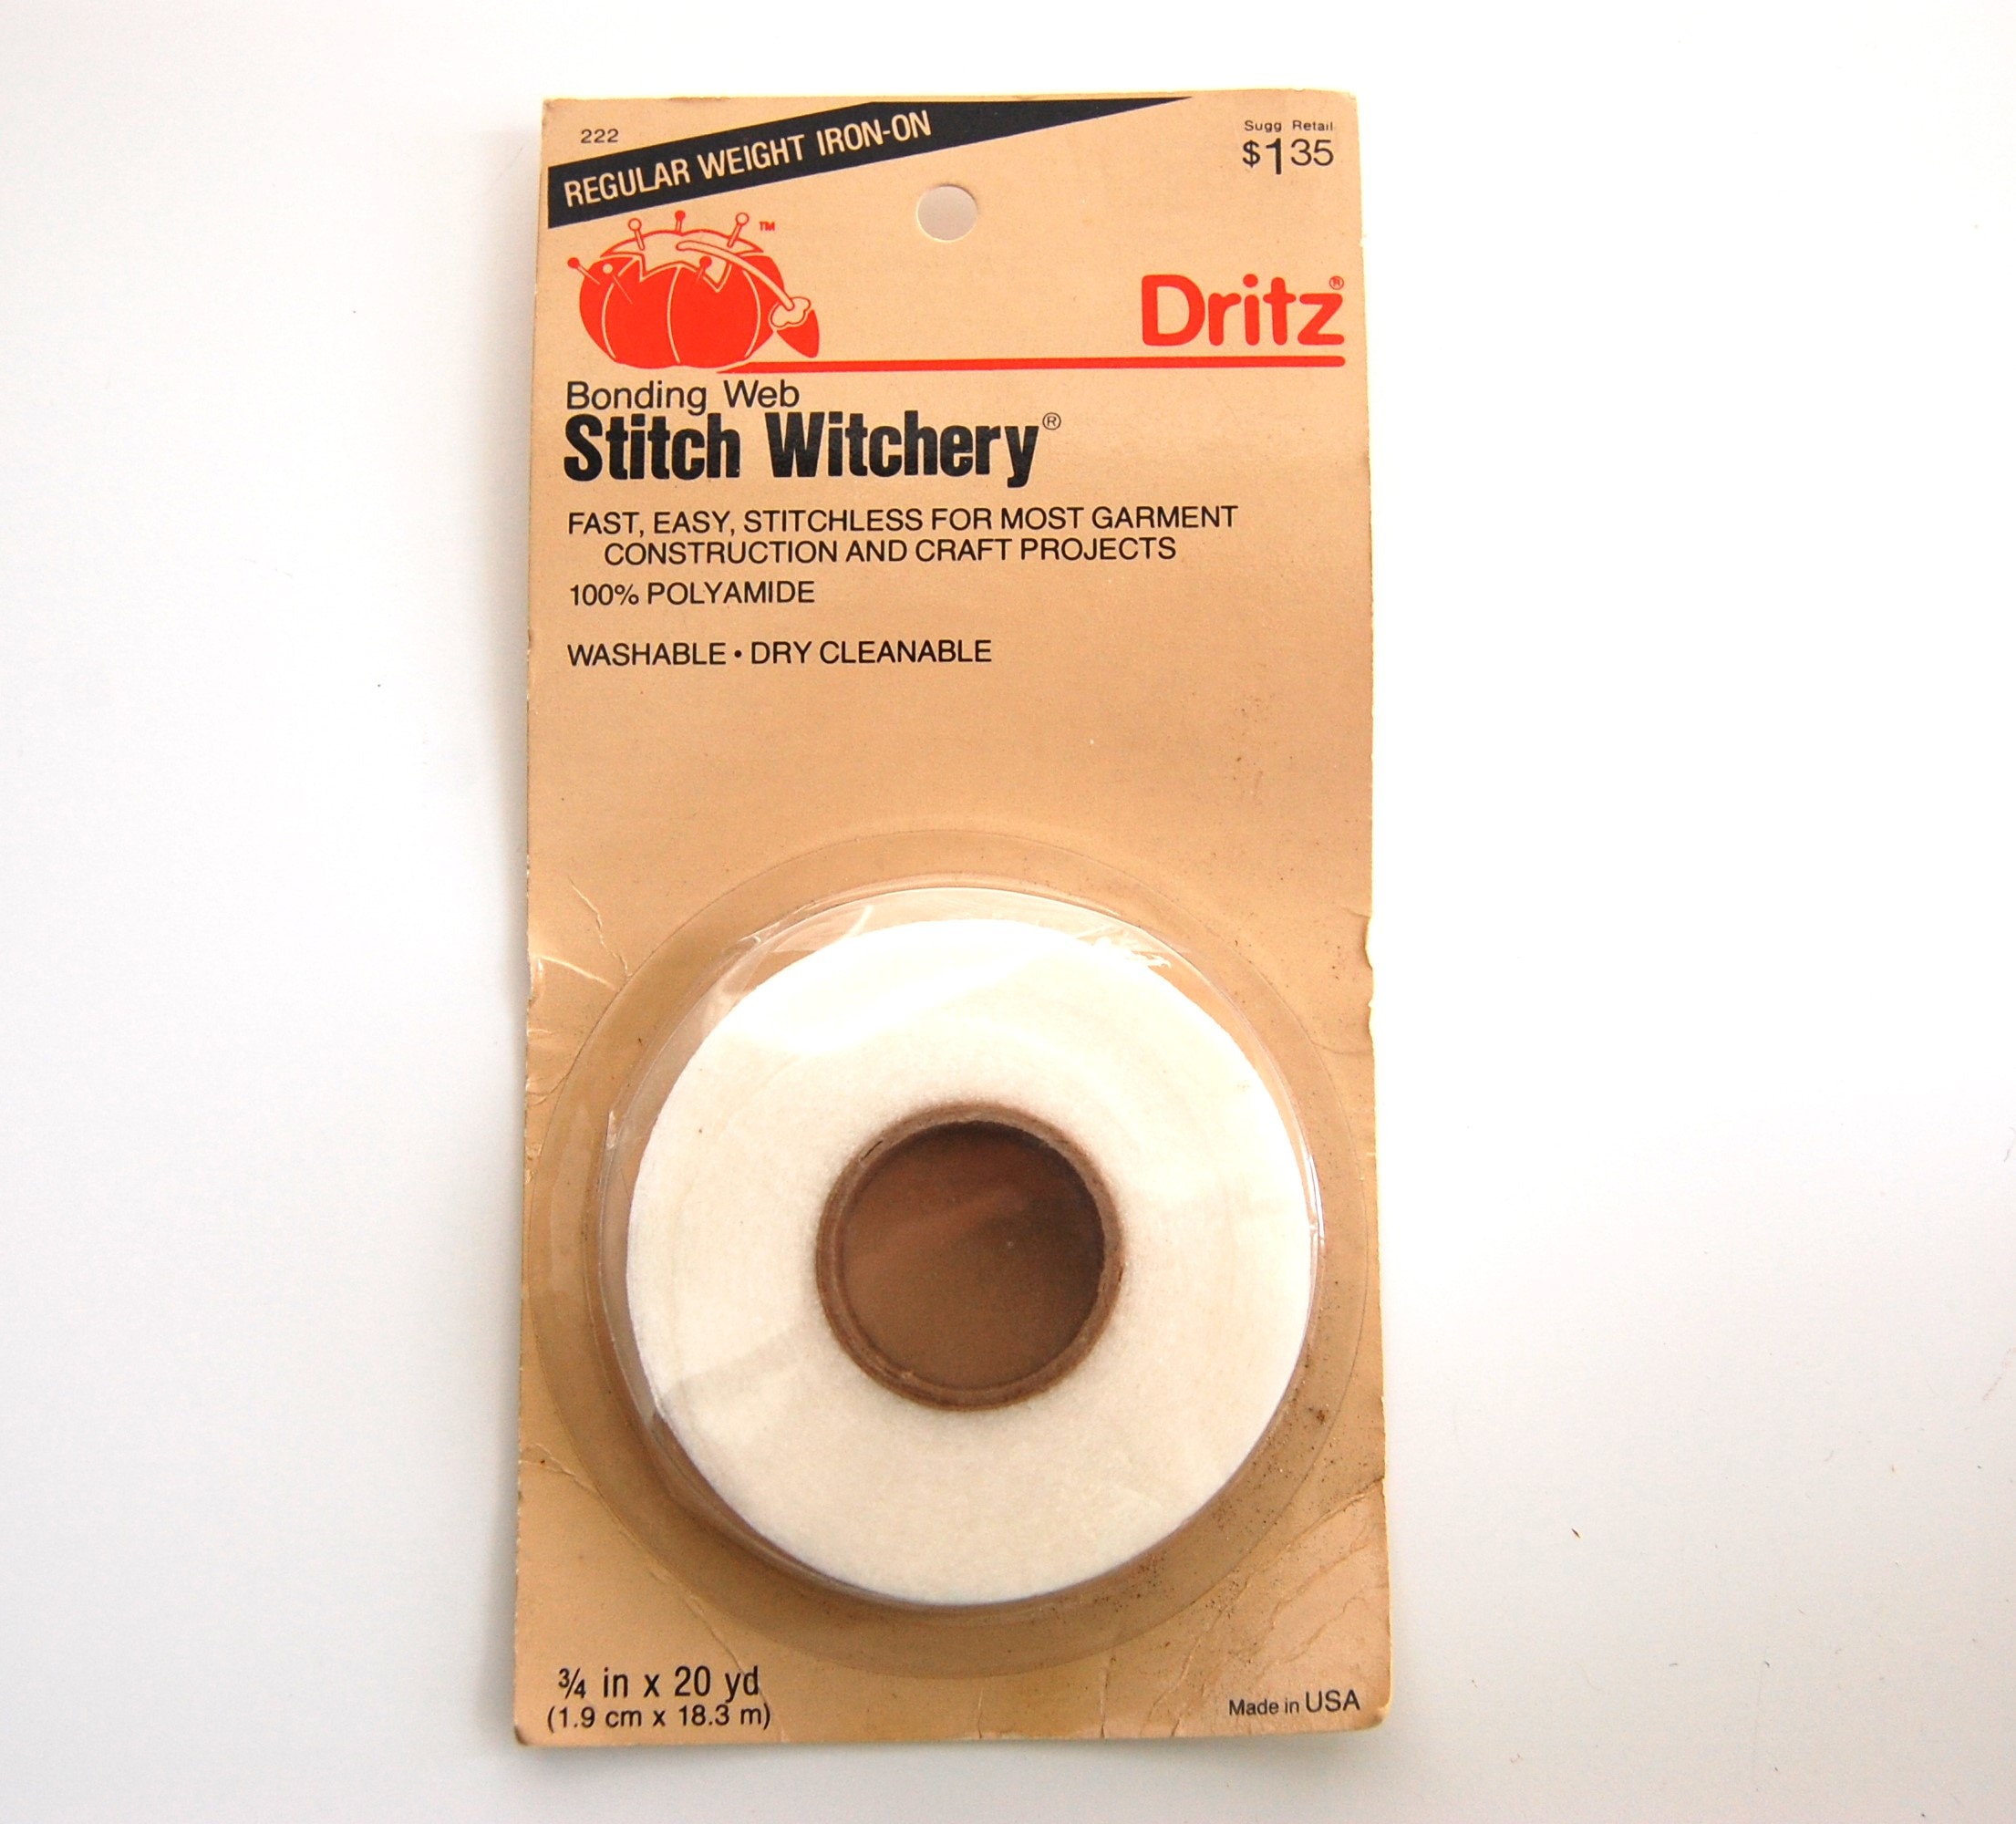 How to Use Dritz Stitch Witchery